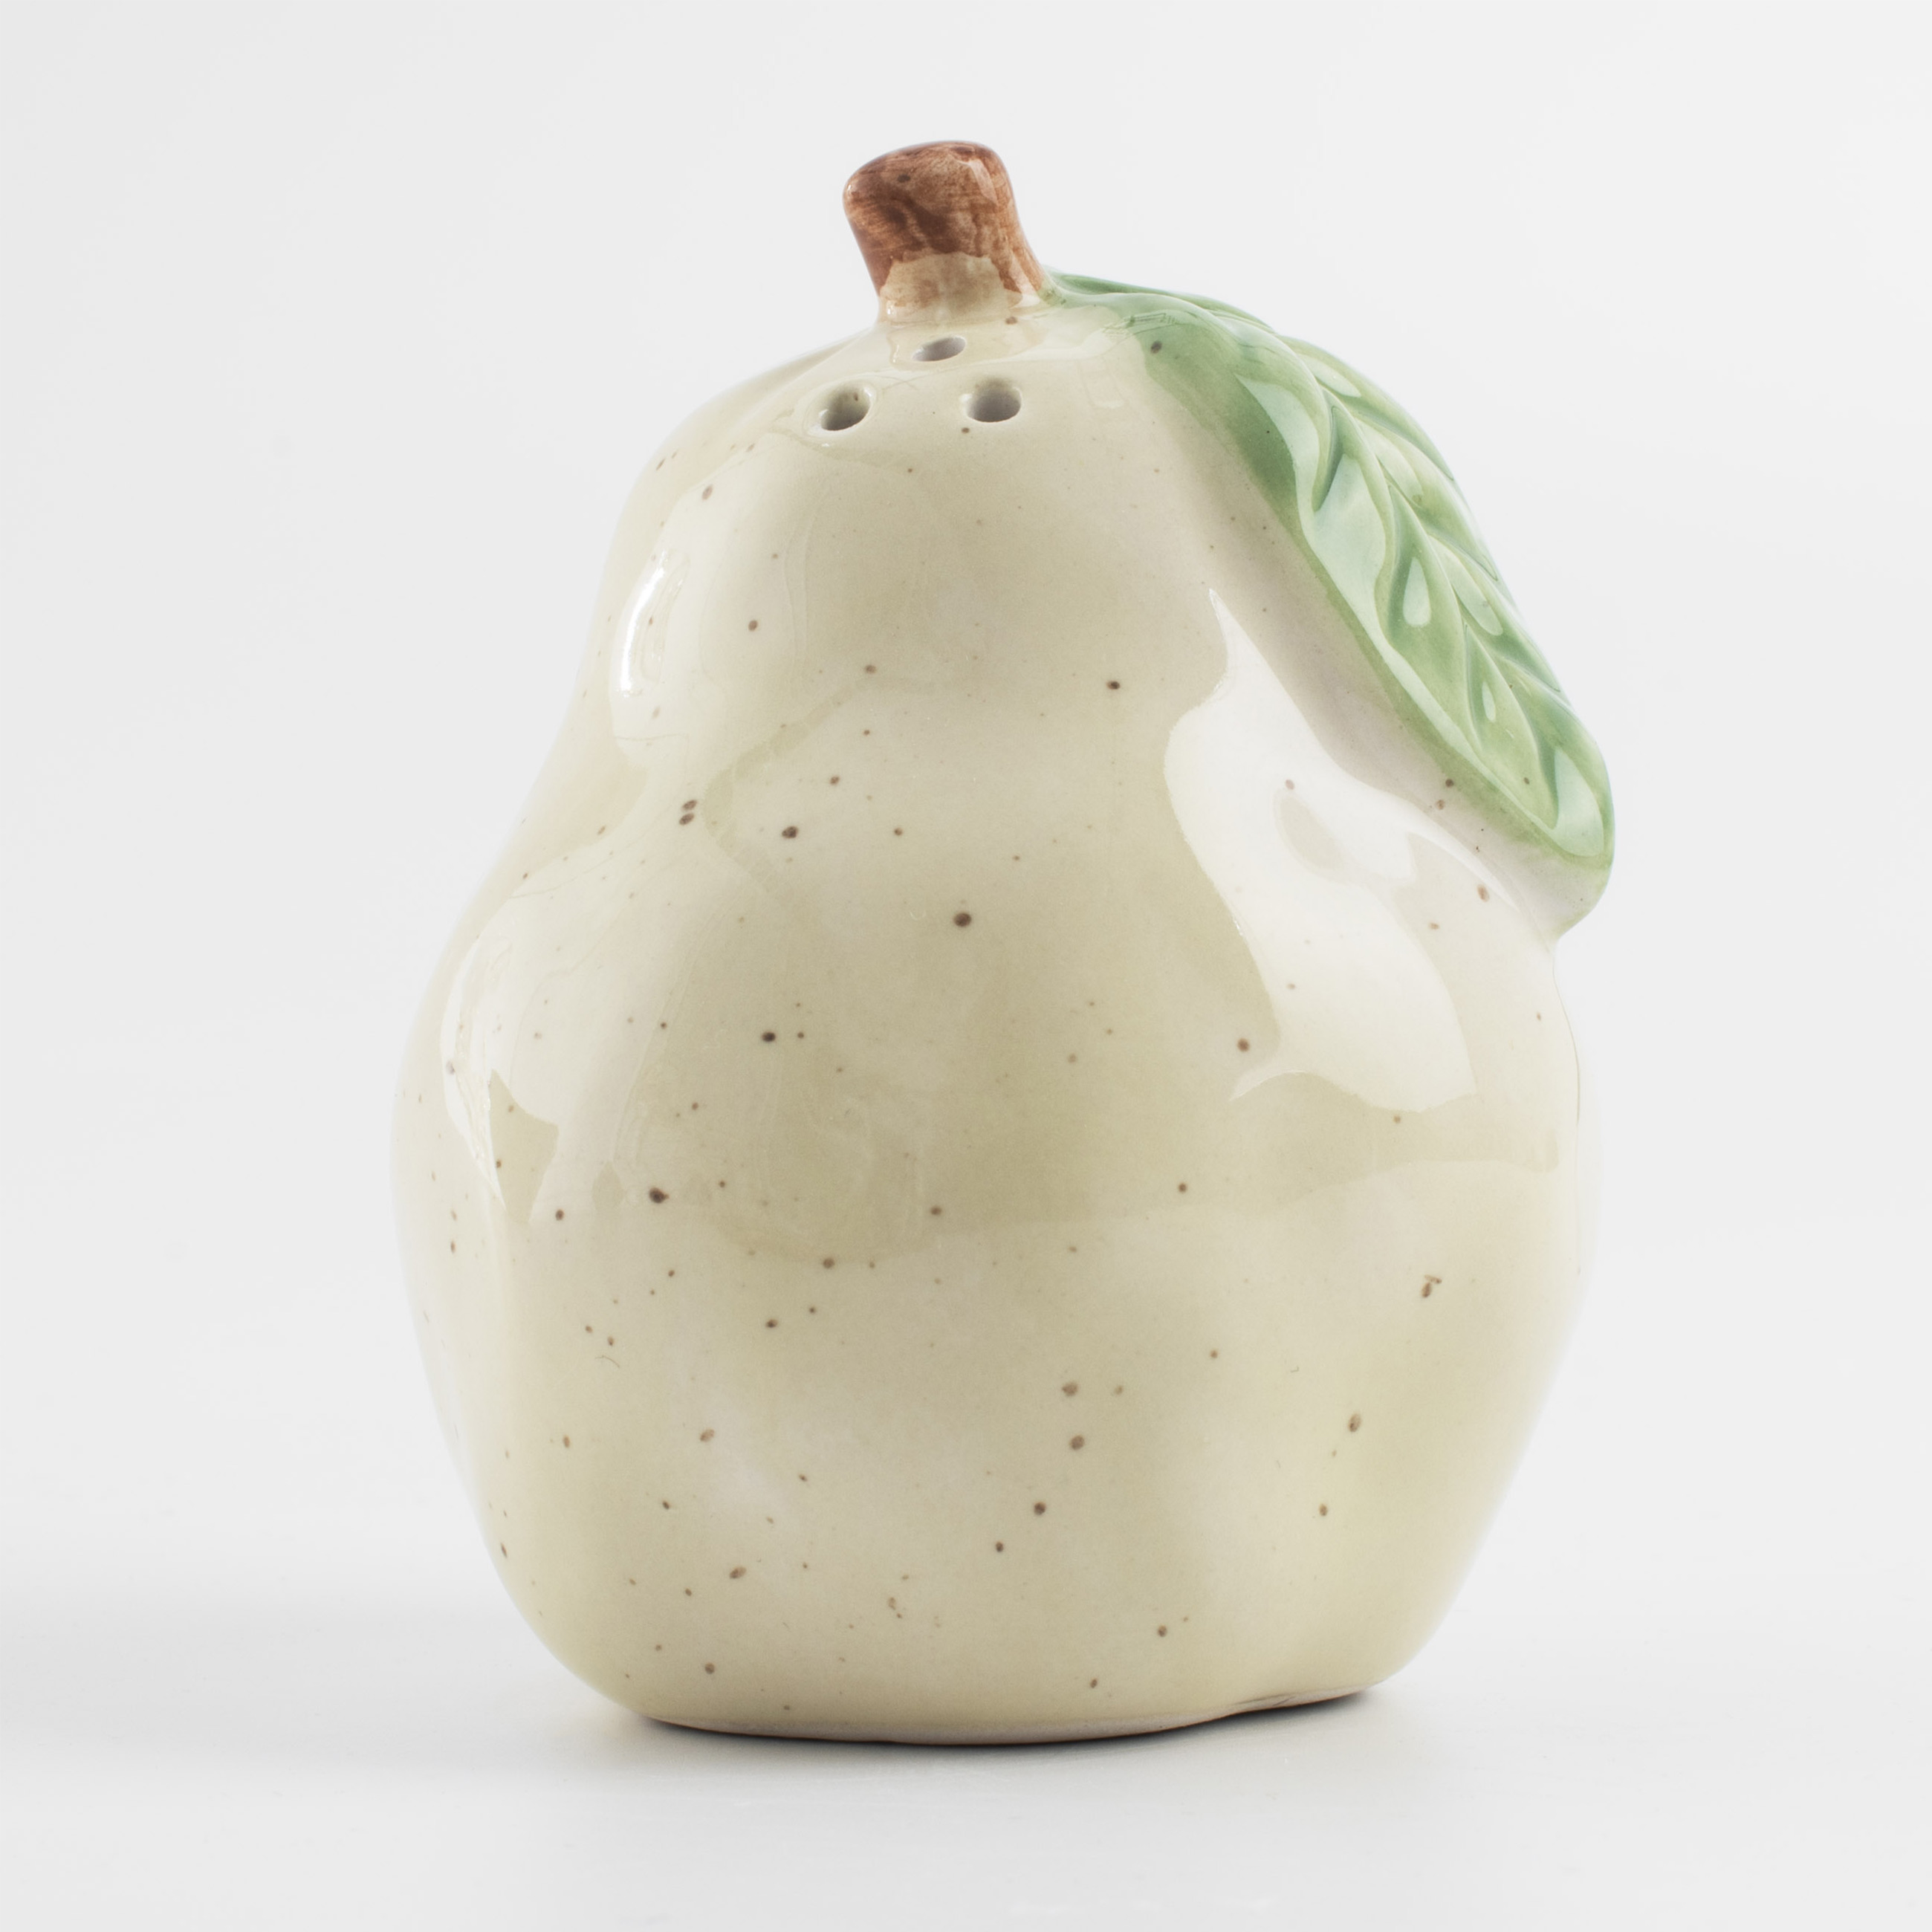 Емкость для соли или перца, 8 см, керамика, молочная, в крапинку, Груша, Fruit garden изображение № 3